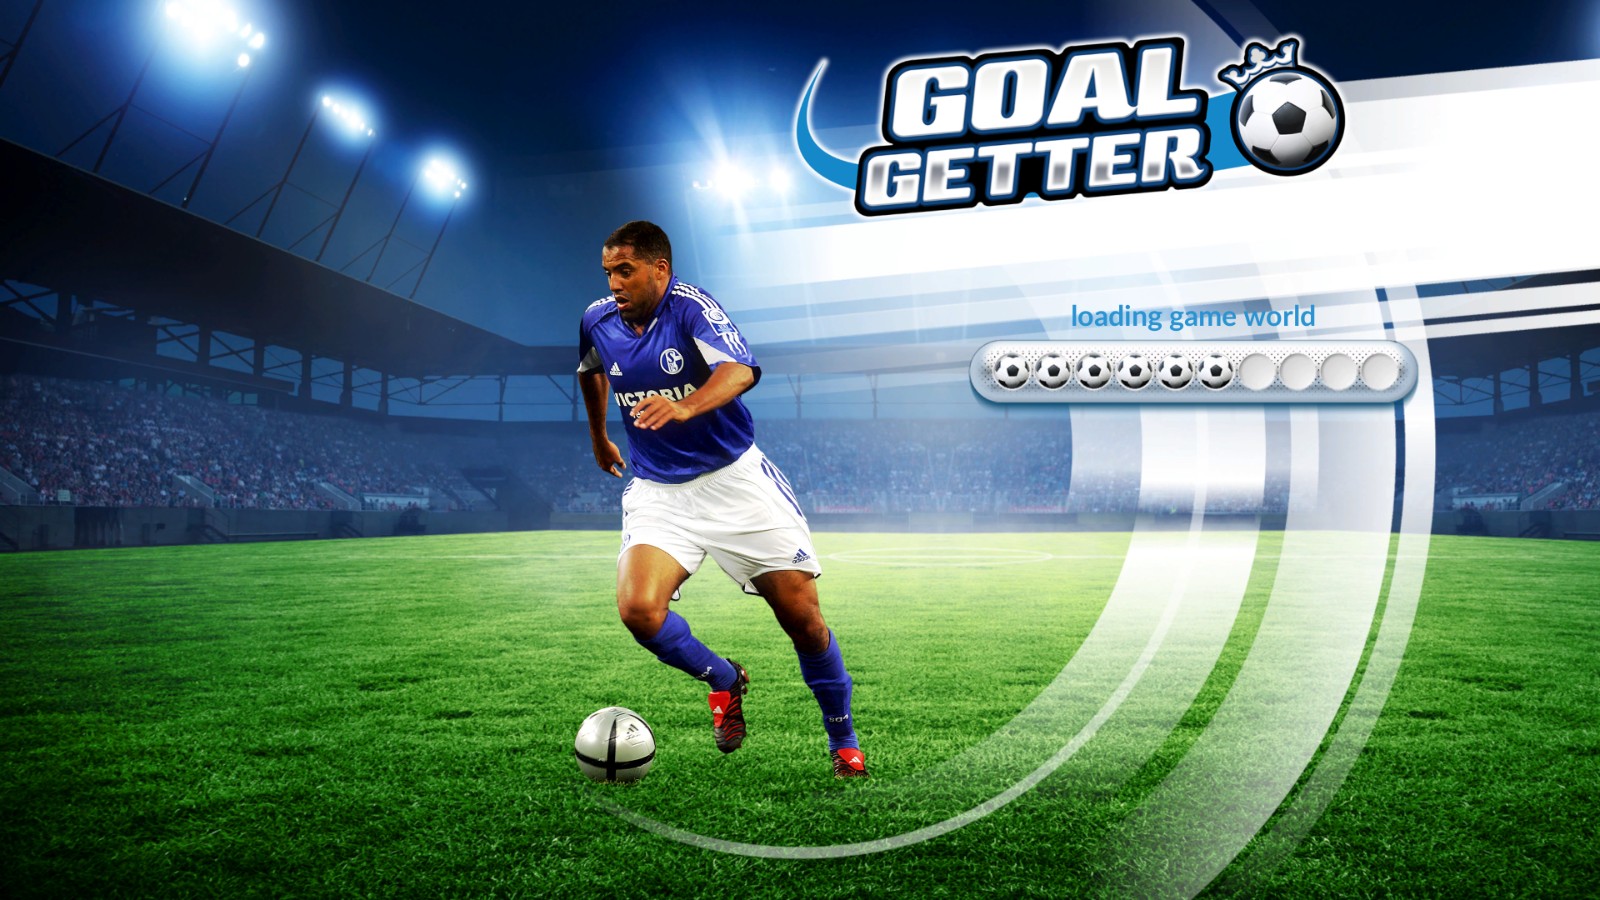 足球运动员模拟器《Goalgetter 》众筹11月29日开始